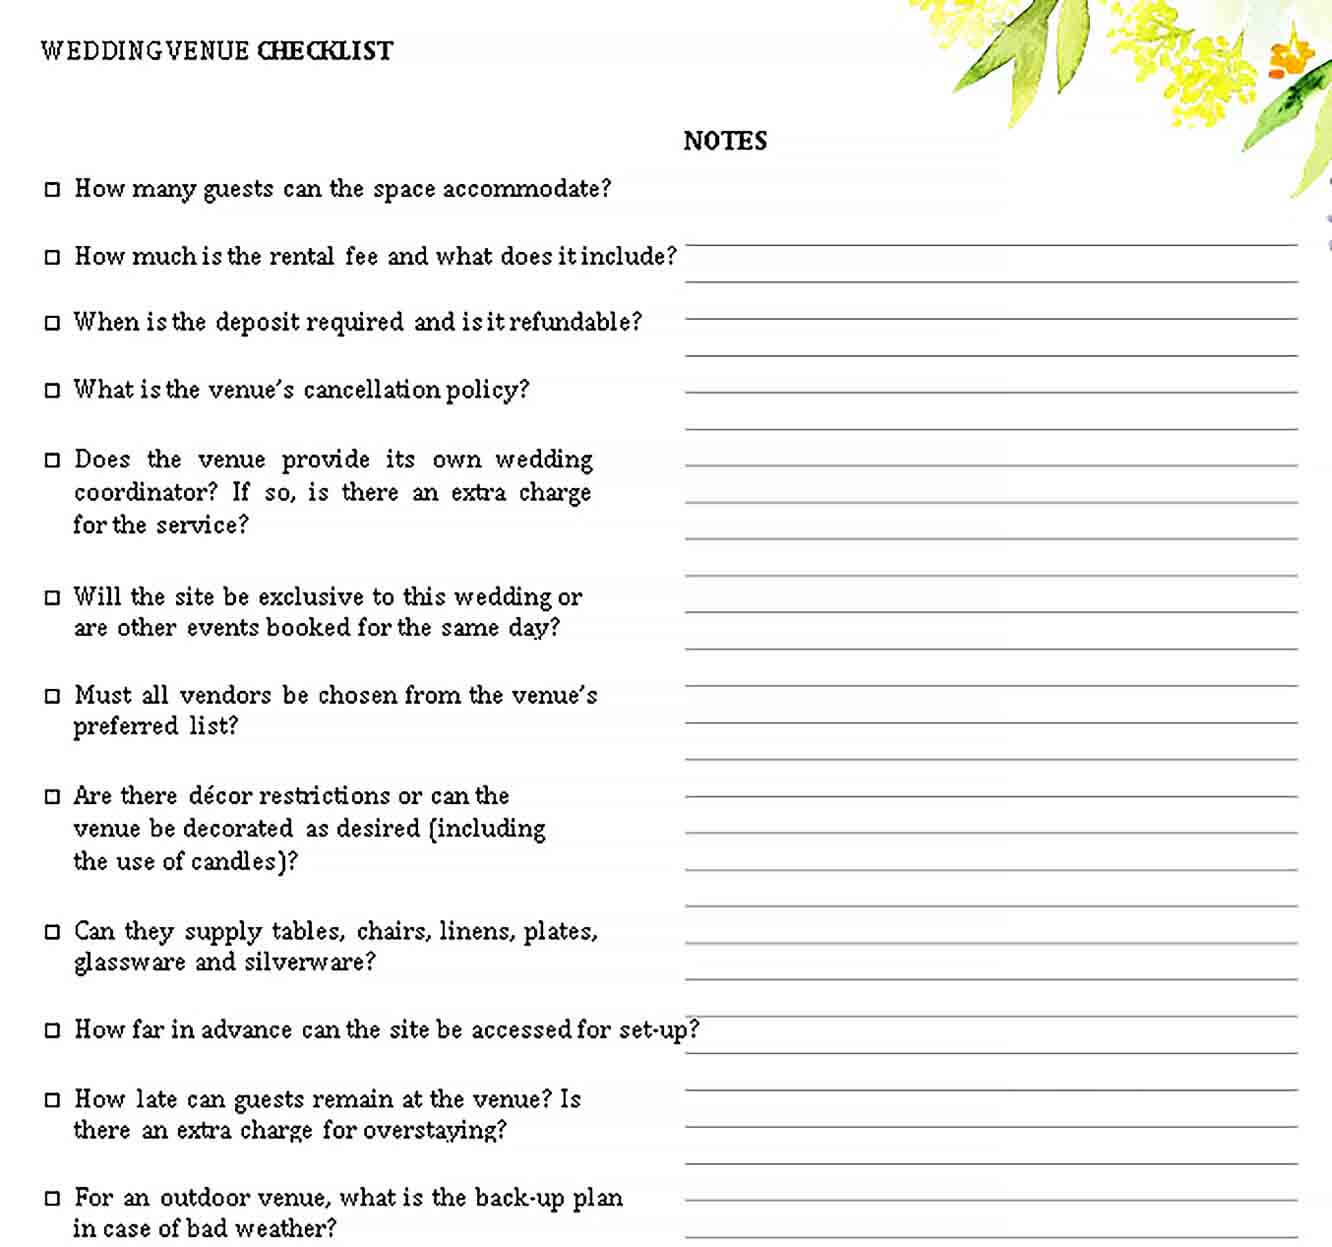 Sample Wedding Venue Checklist Template